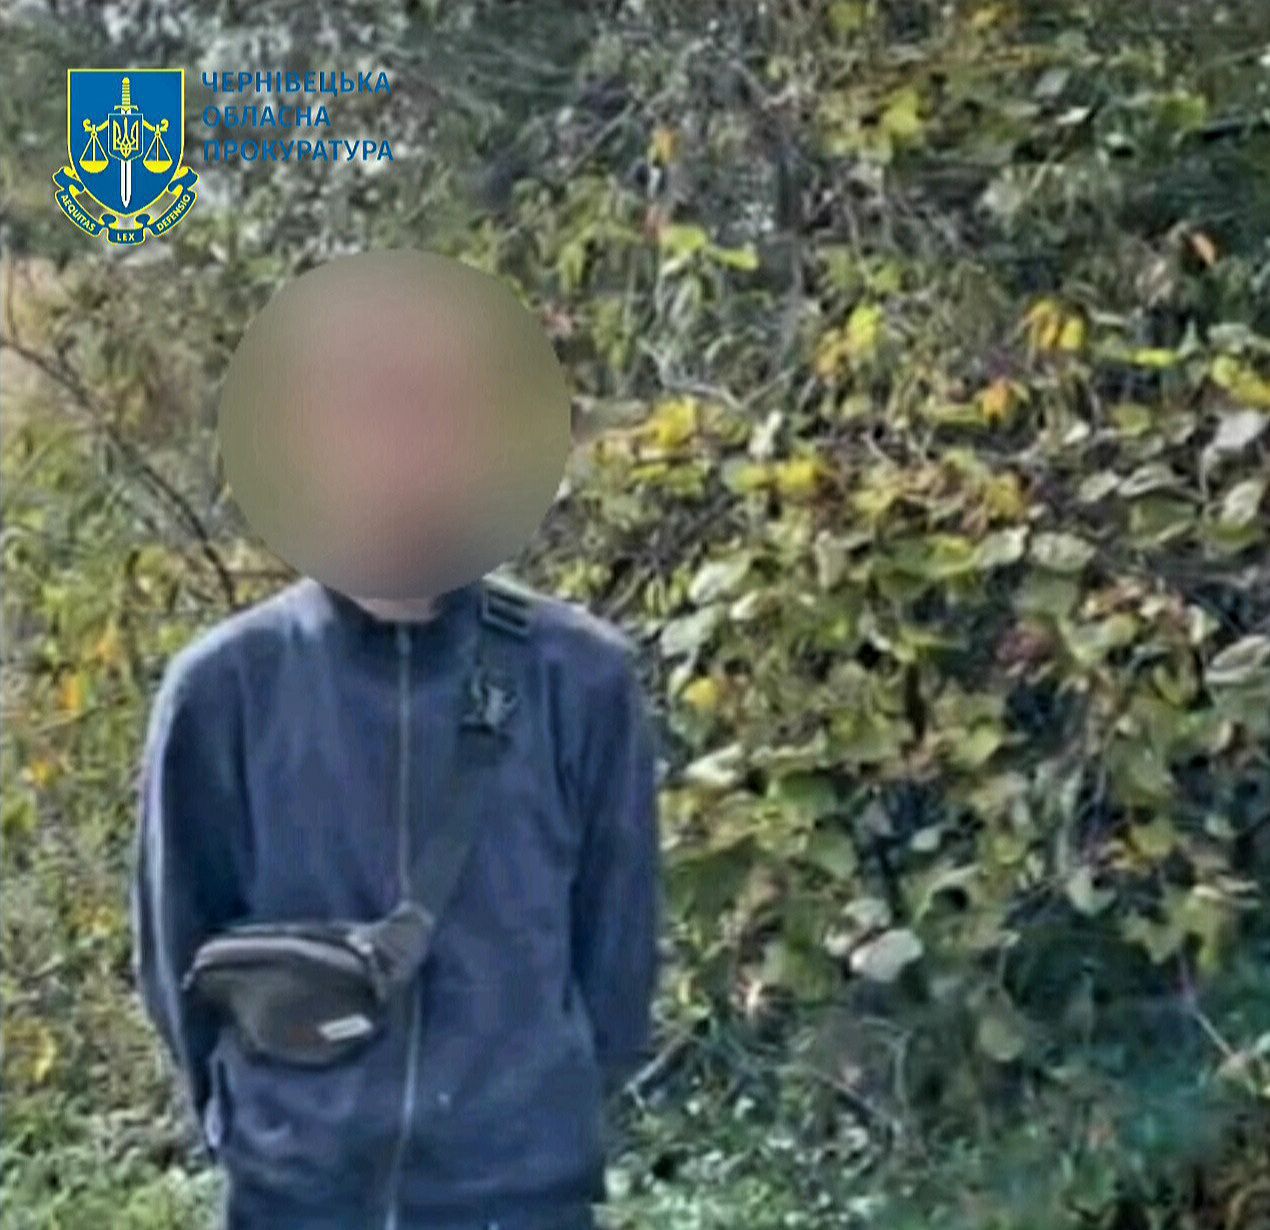 Вербування неповнолітніх для сексуальної експлуатації – повідомлено про підозру жителю Буковини